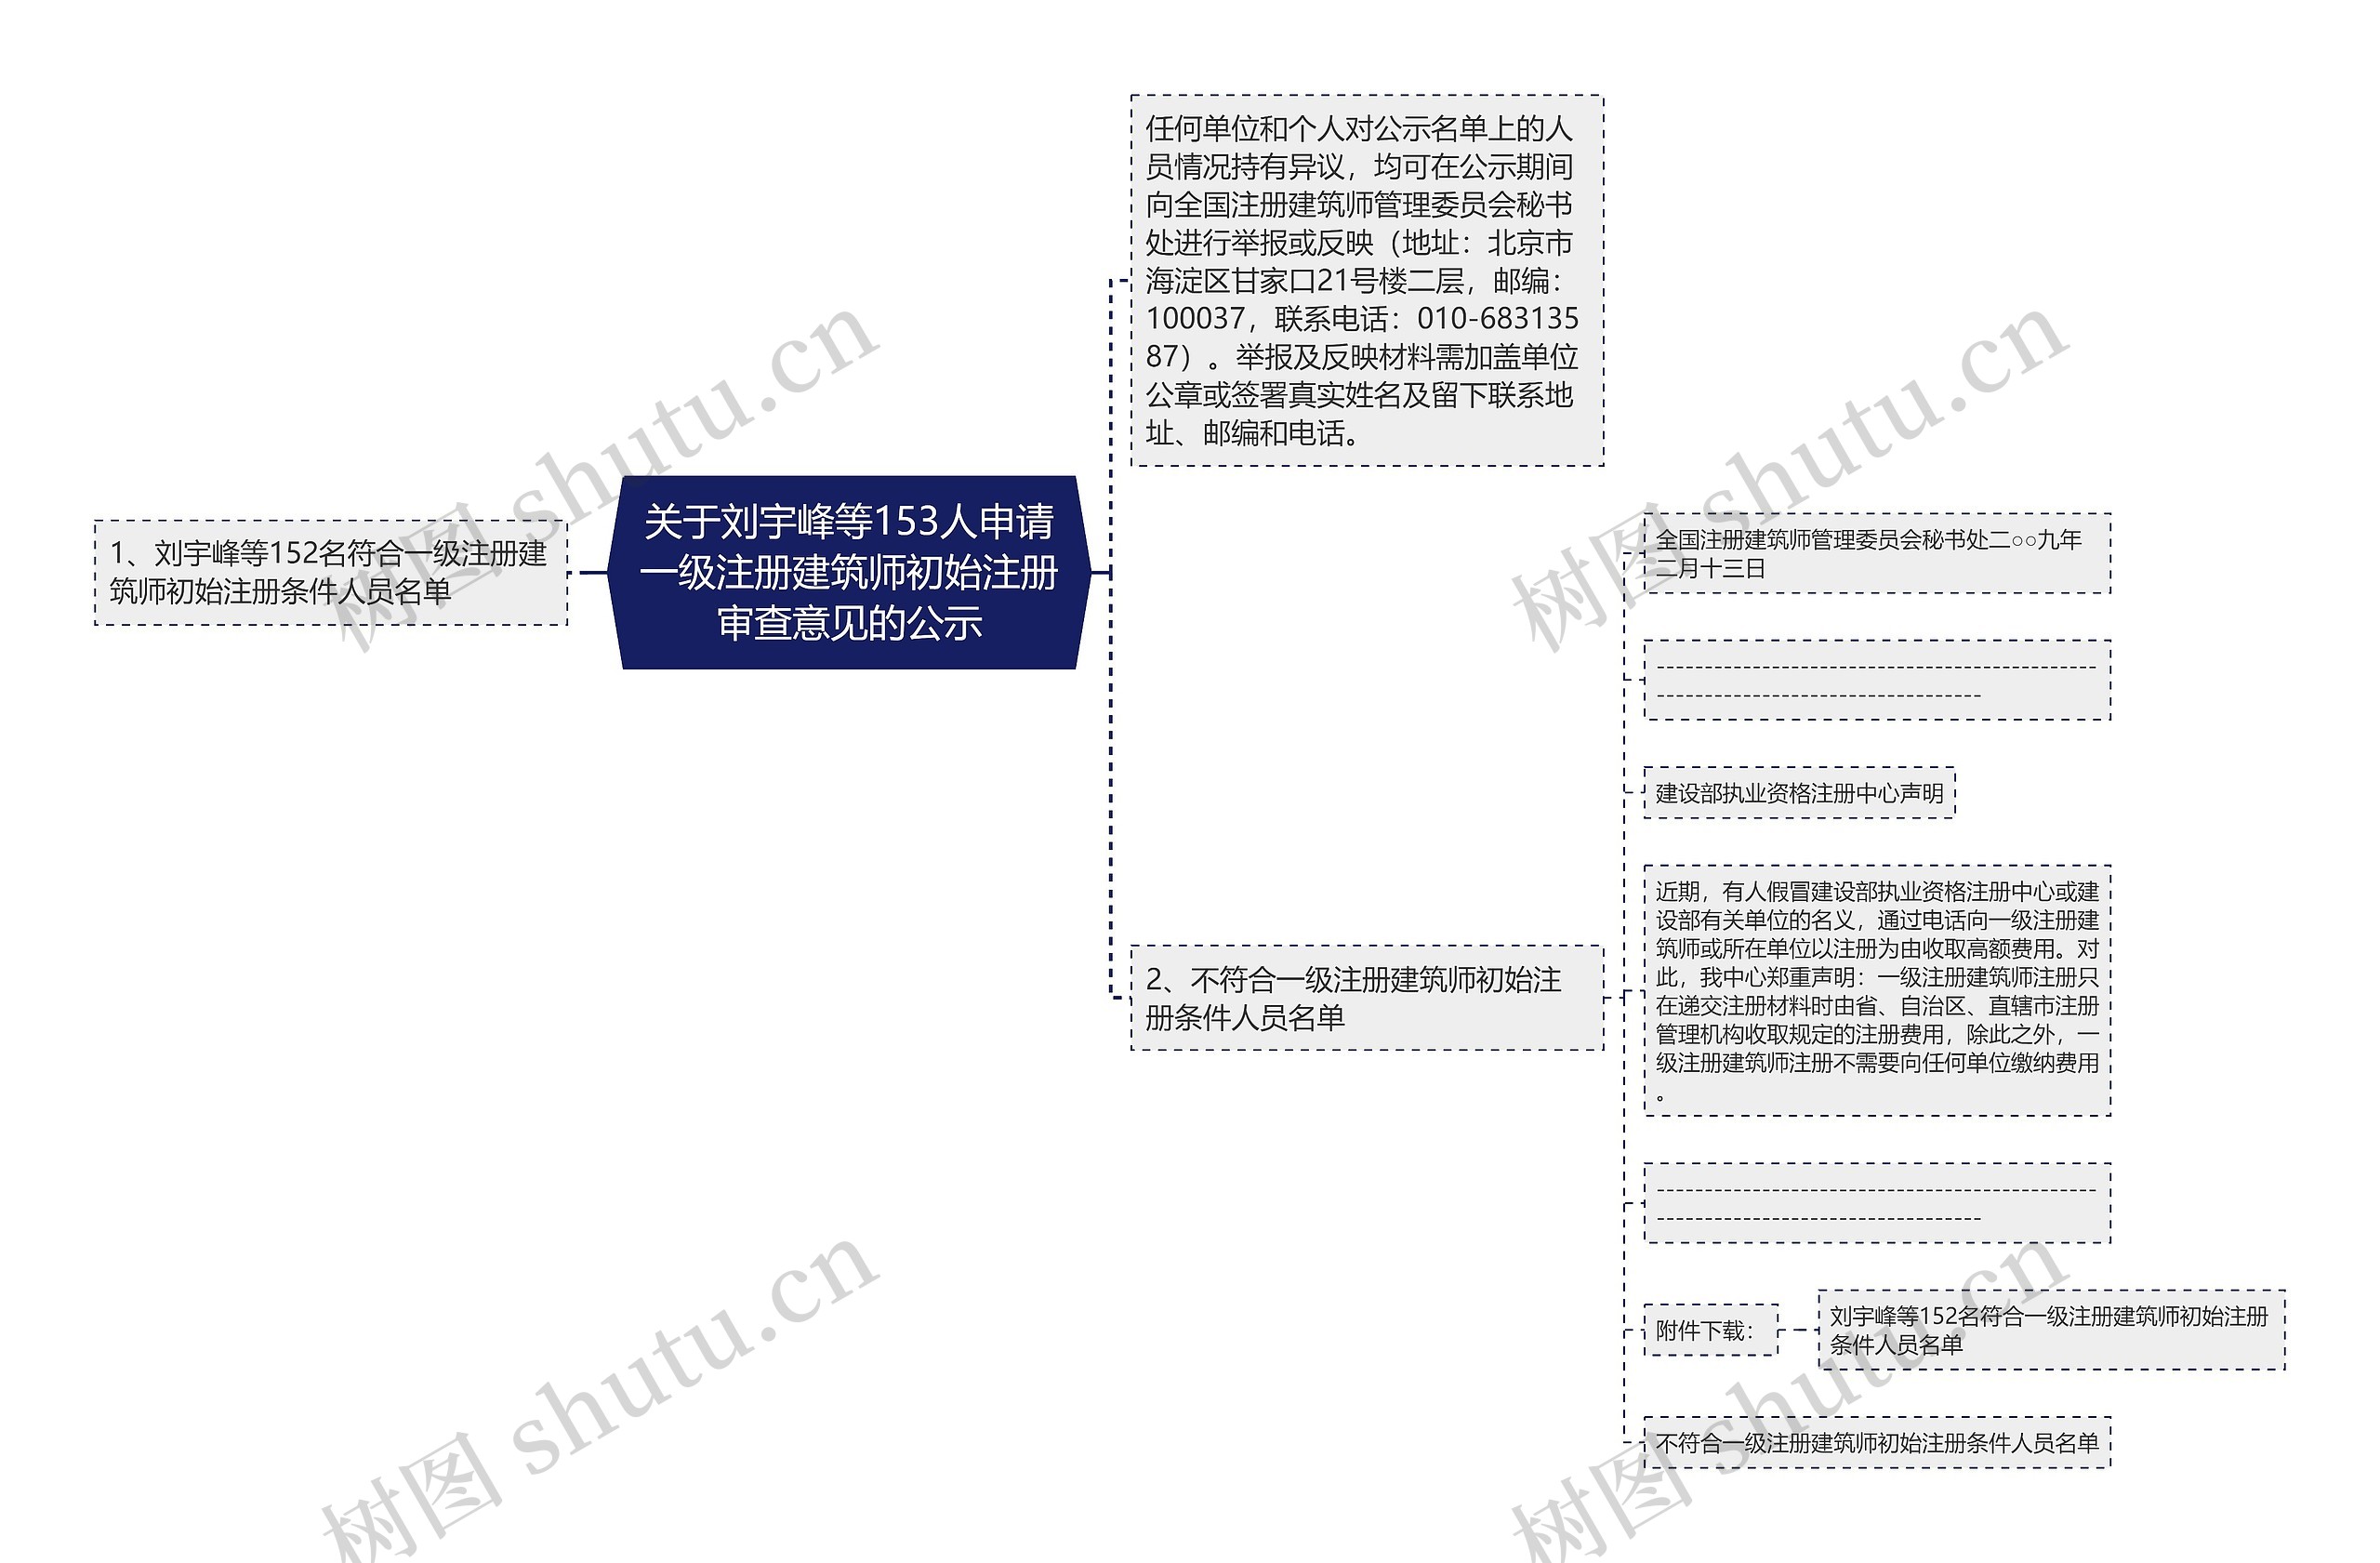 关于刘宇峰等153人申请一级注册建筑师初始注册审查意见的公示思维导图